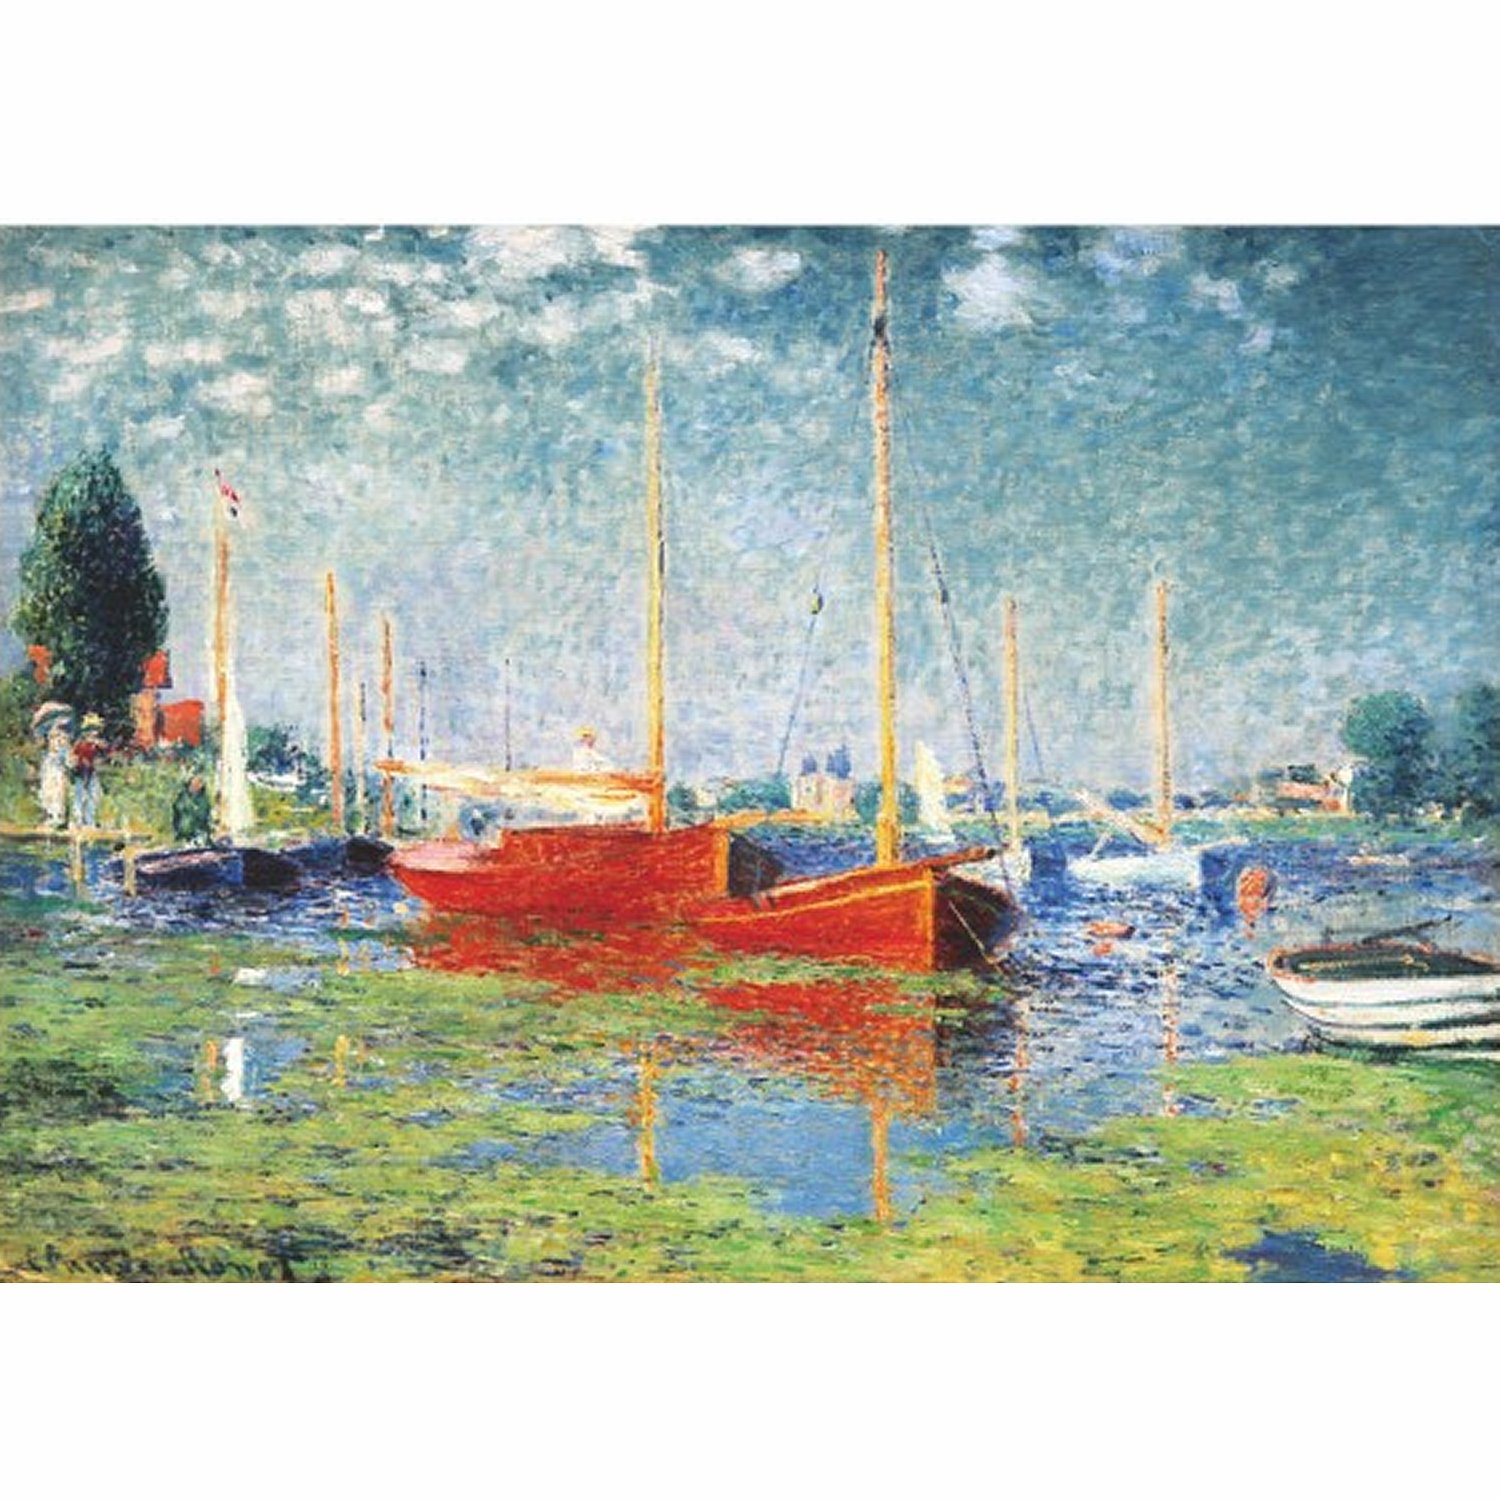 Puzzle 1000 pièces - Monet : Argenteuil